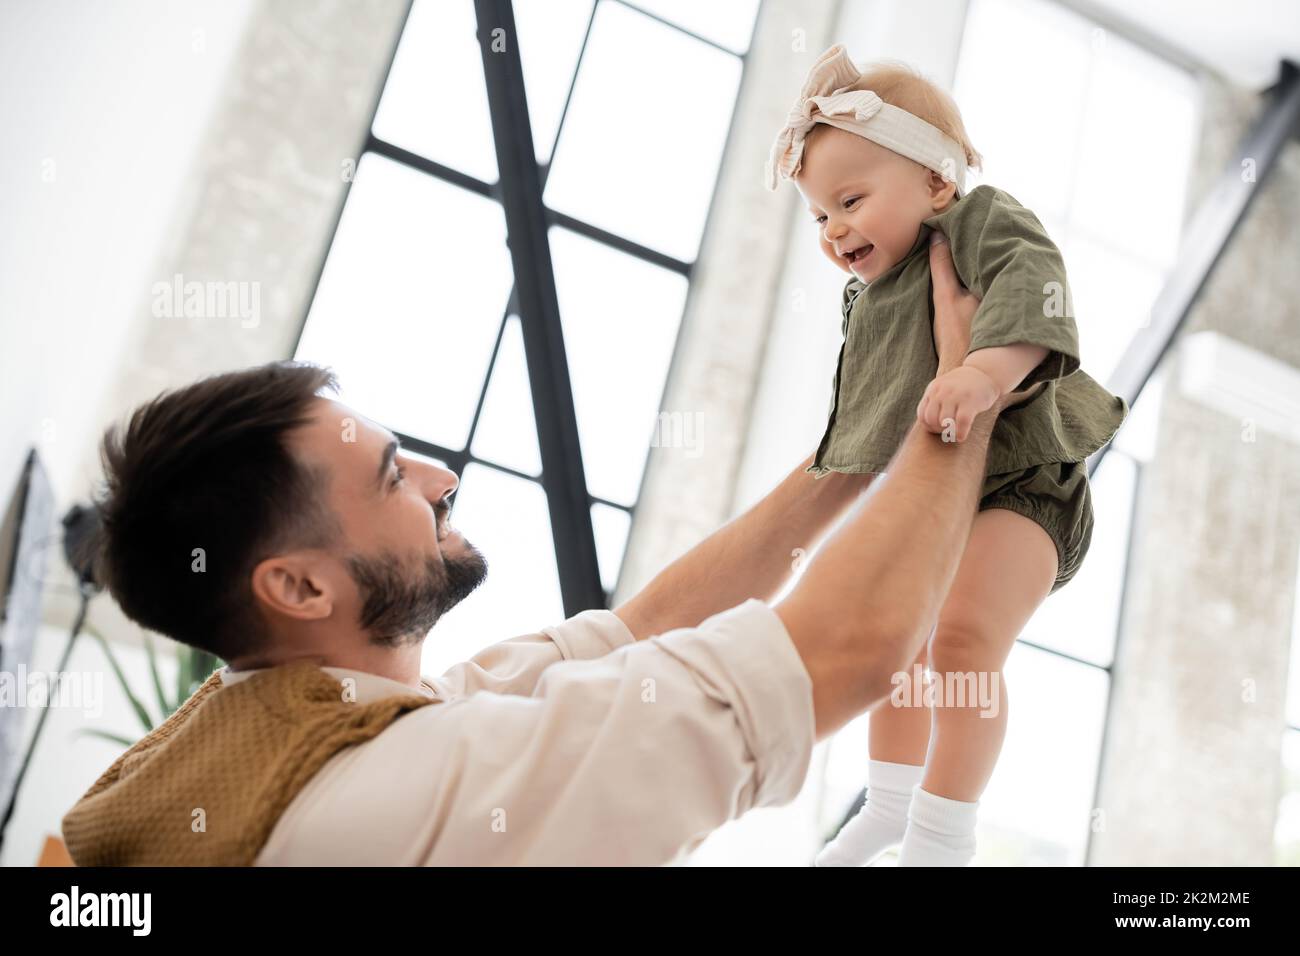 padre alegre sosteniendo a una hija positiva en la diadema y vestido, imagen de archivo Foto de stock